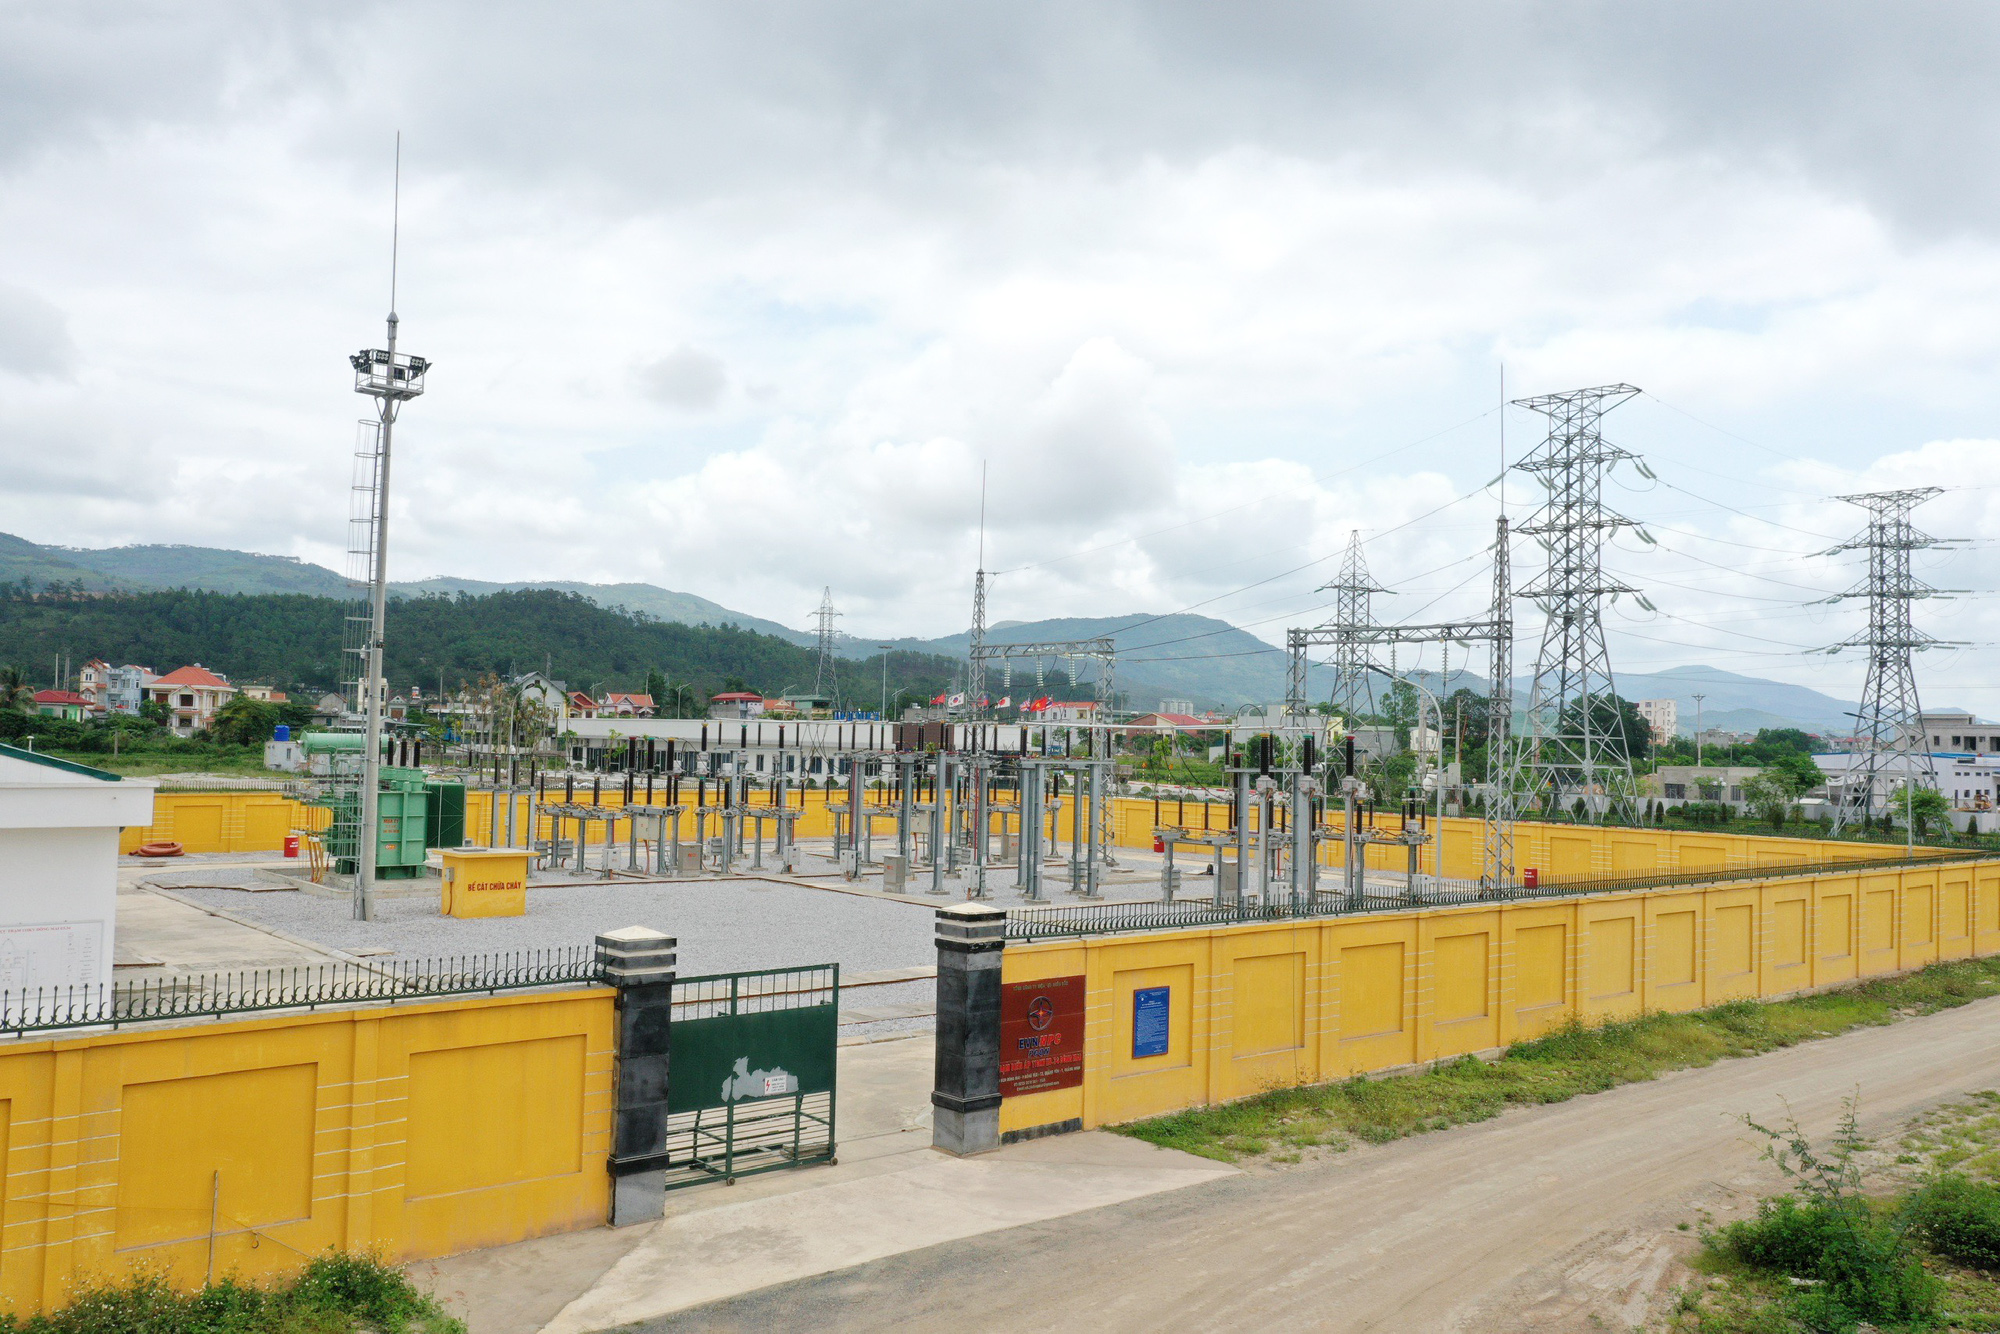 Trạm cung cấp điện cho KCN Đông Mai đã được hoàn thành công tác xây lắp, đưa vào vận hành từ tháng 10/2019. Ảnh: Mạnh Trường